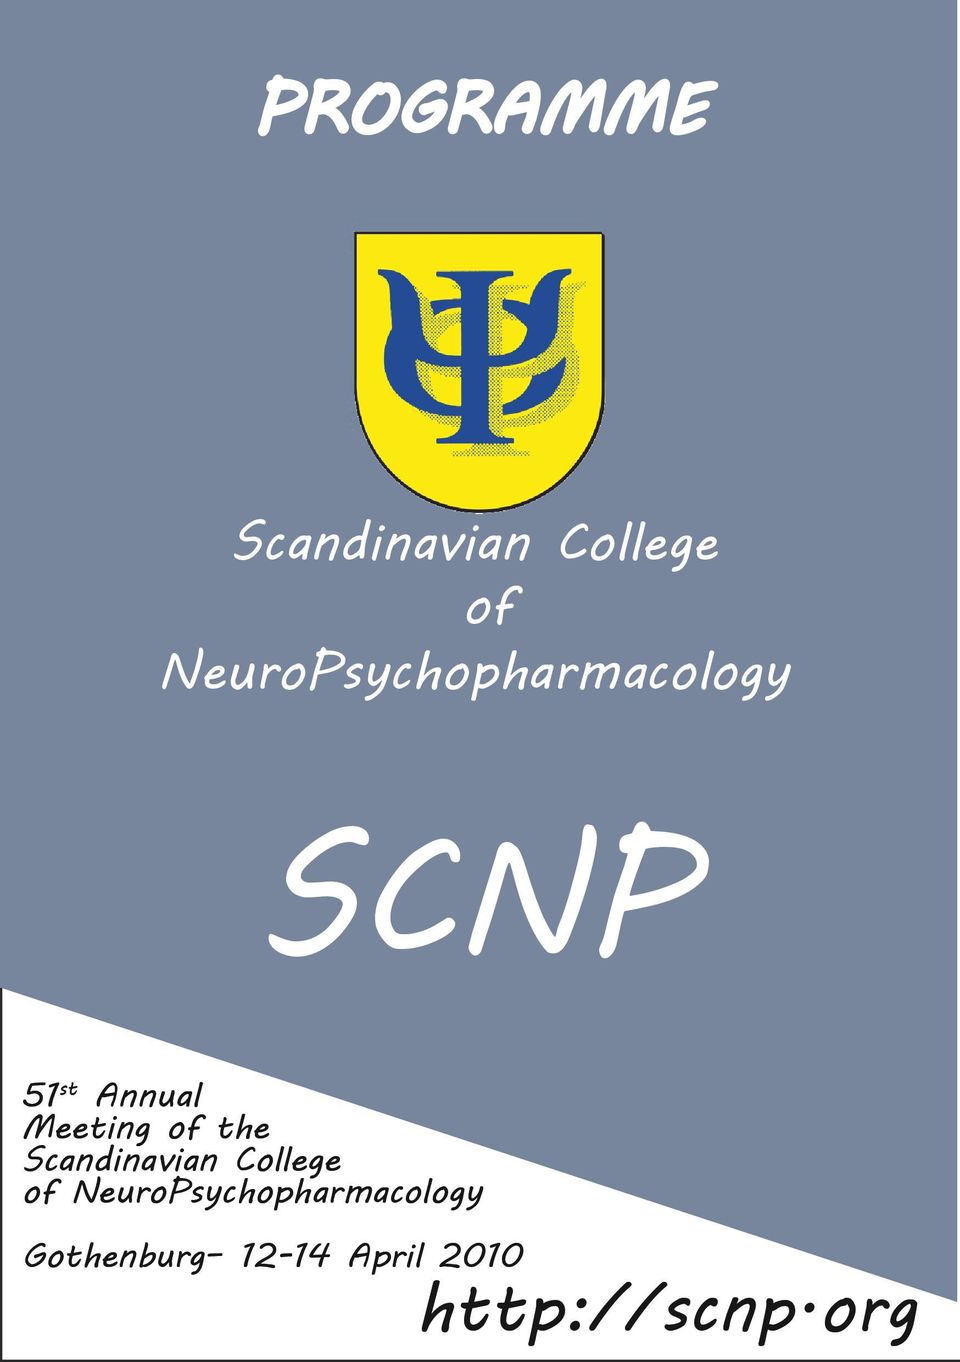 Meeting of the Scandinavian College of